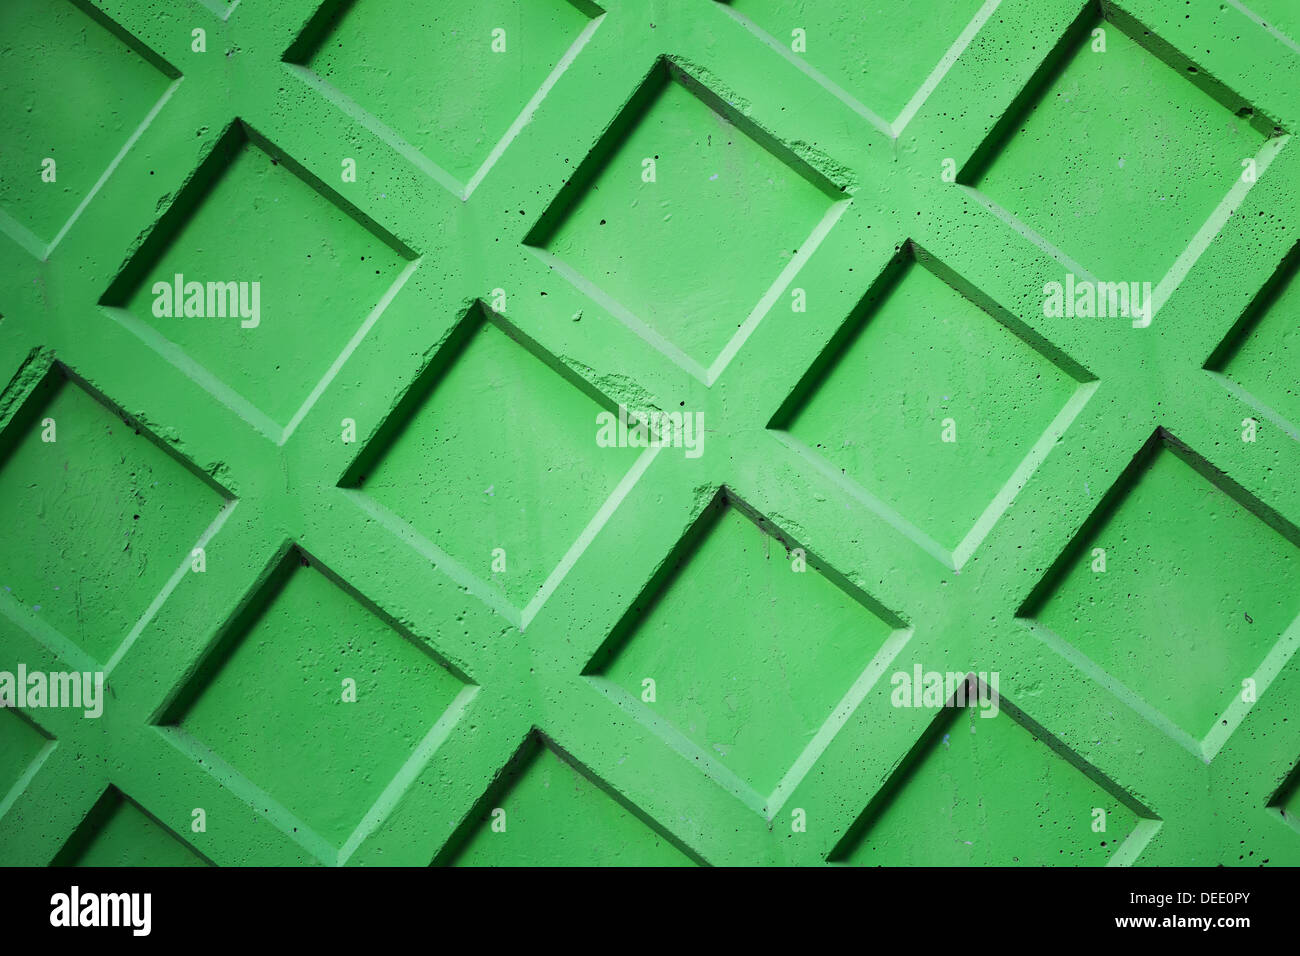 Abstrakte Fototextur der hellen grünen Betonzaun Mauer Stockfoto